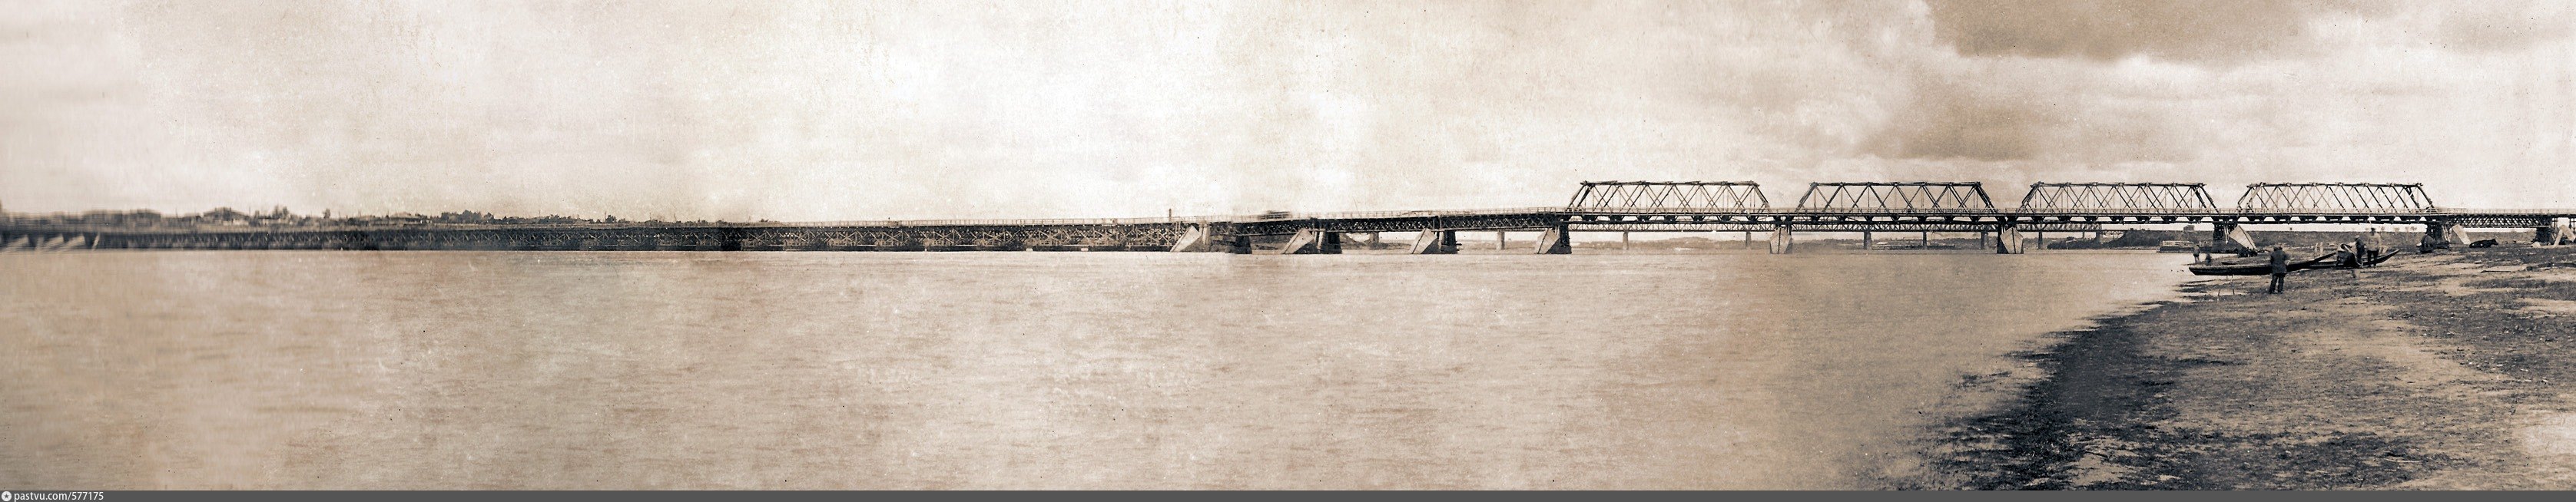 Омск Понтонный мост 1942 год